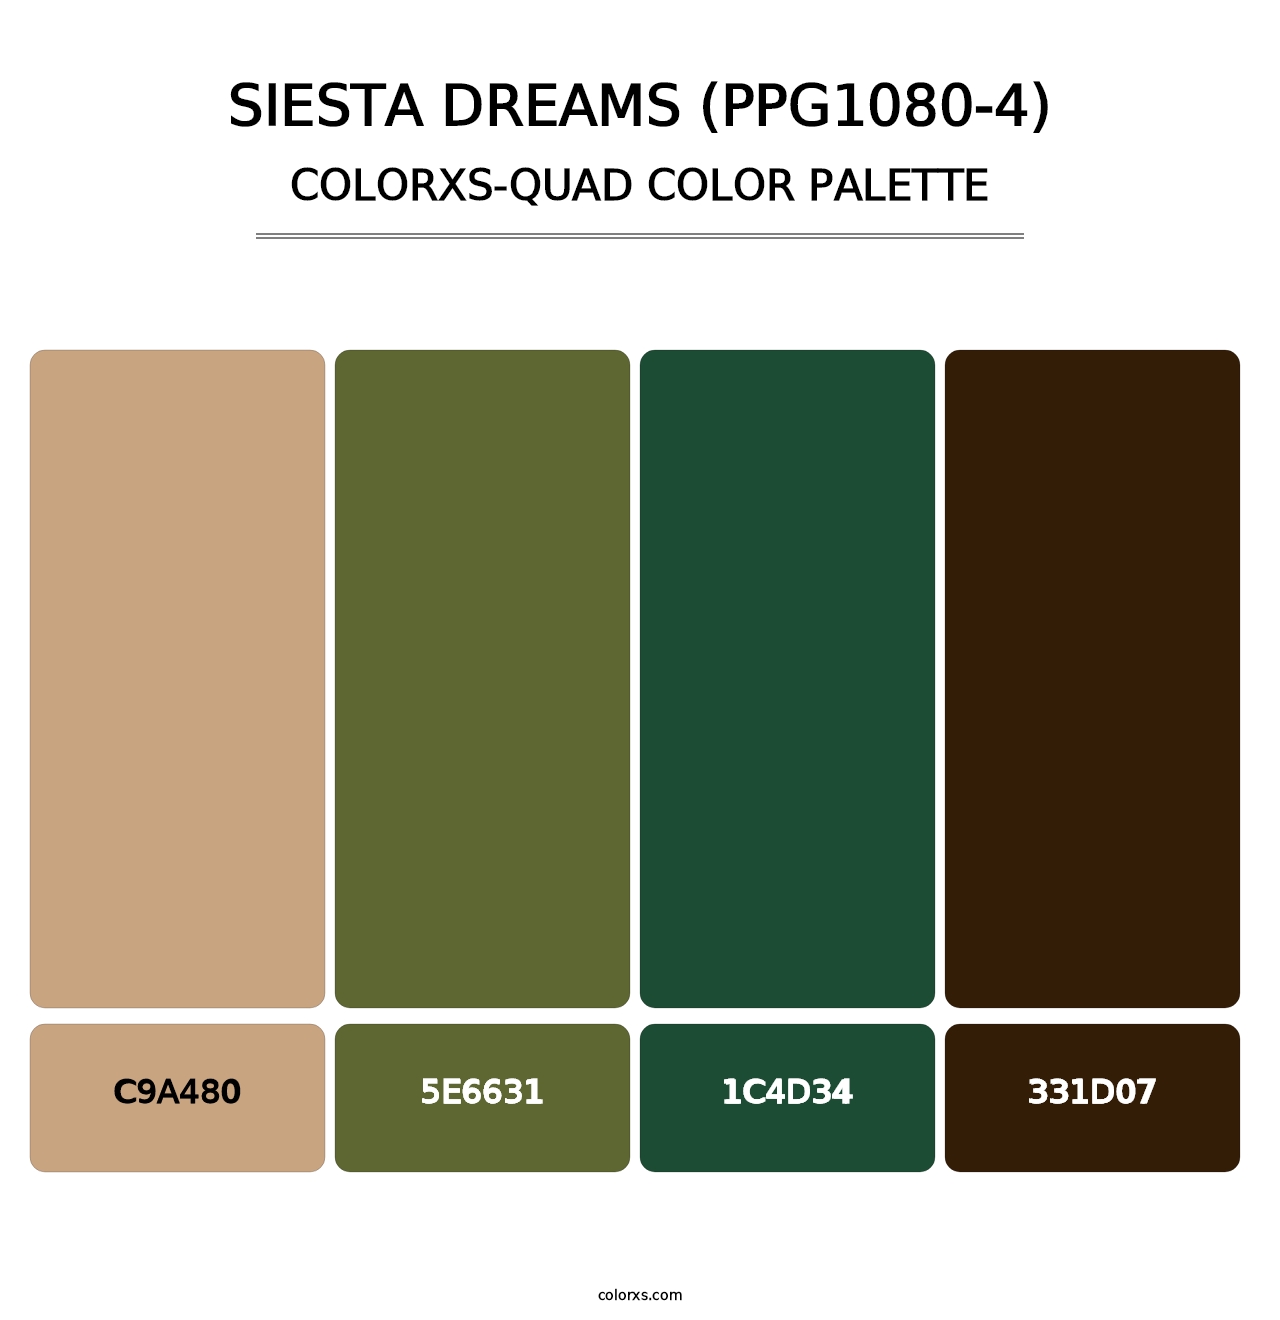 Siesta Dreams (PPG1080-4) - Colorxs Quad Palette